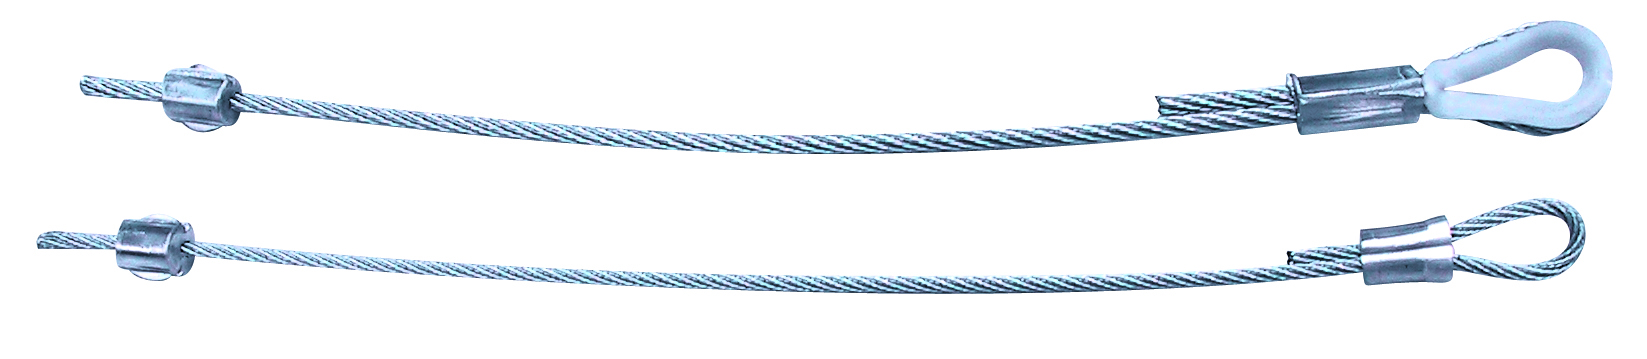 Lift cable comparison